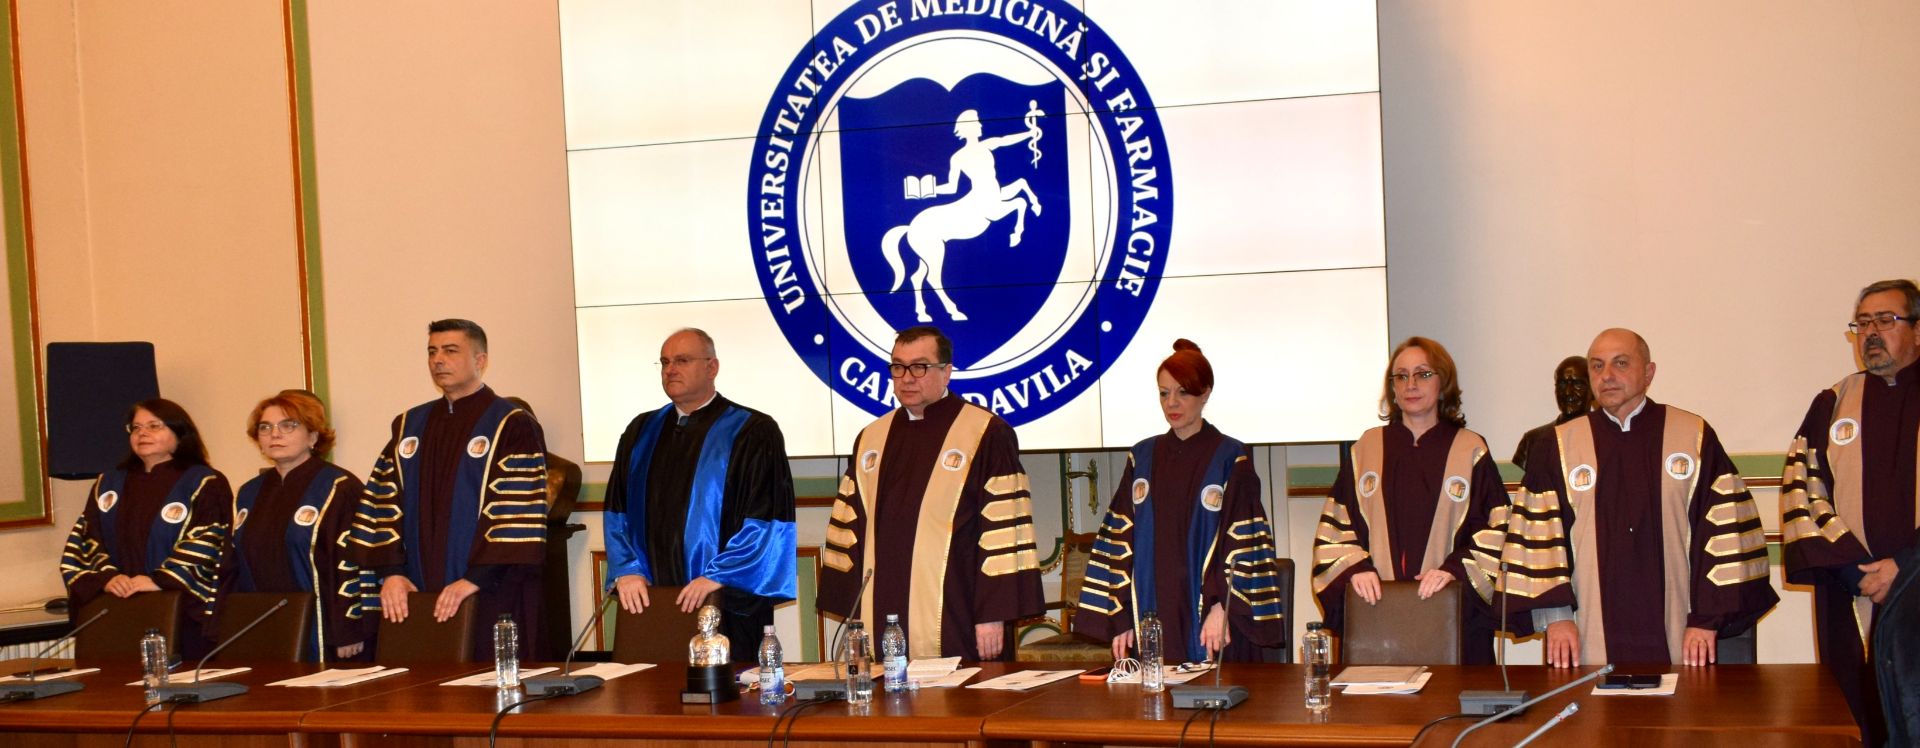 Prof. dr. Christos Katsaros a primit titlul de Doctor Honoris Causa la UMF București